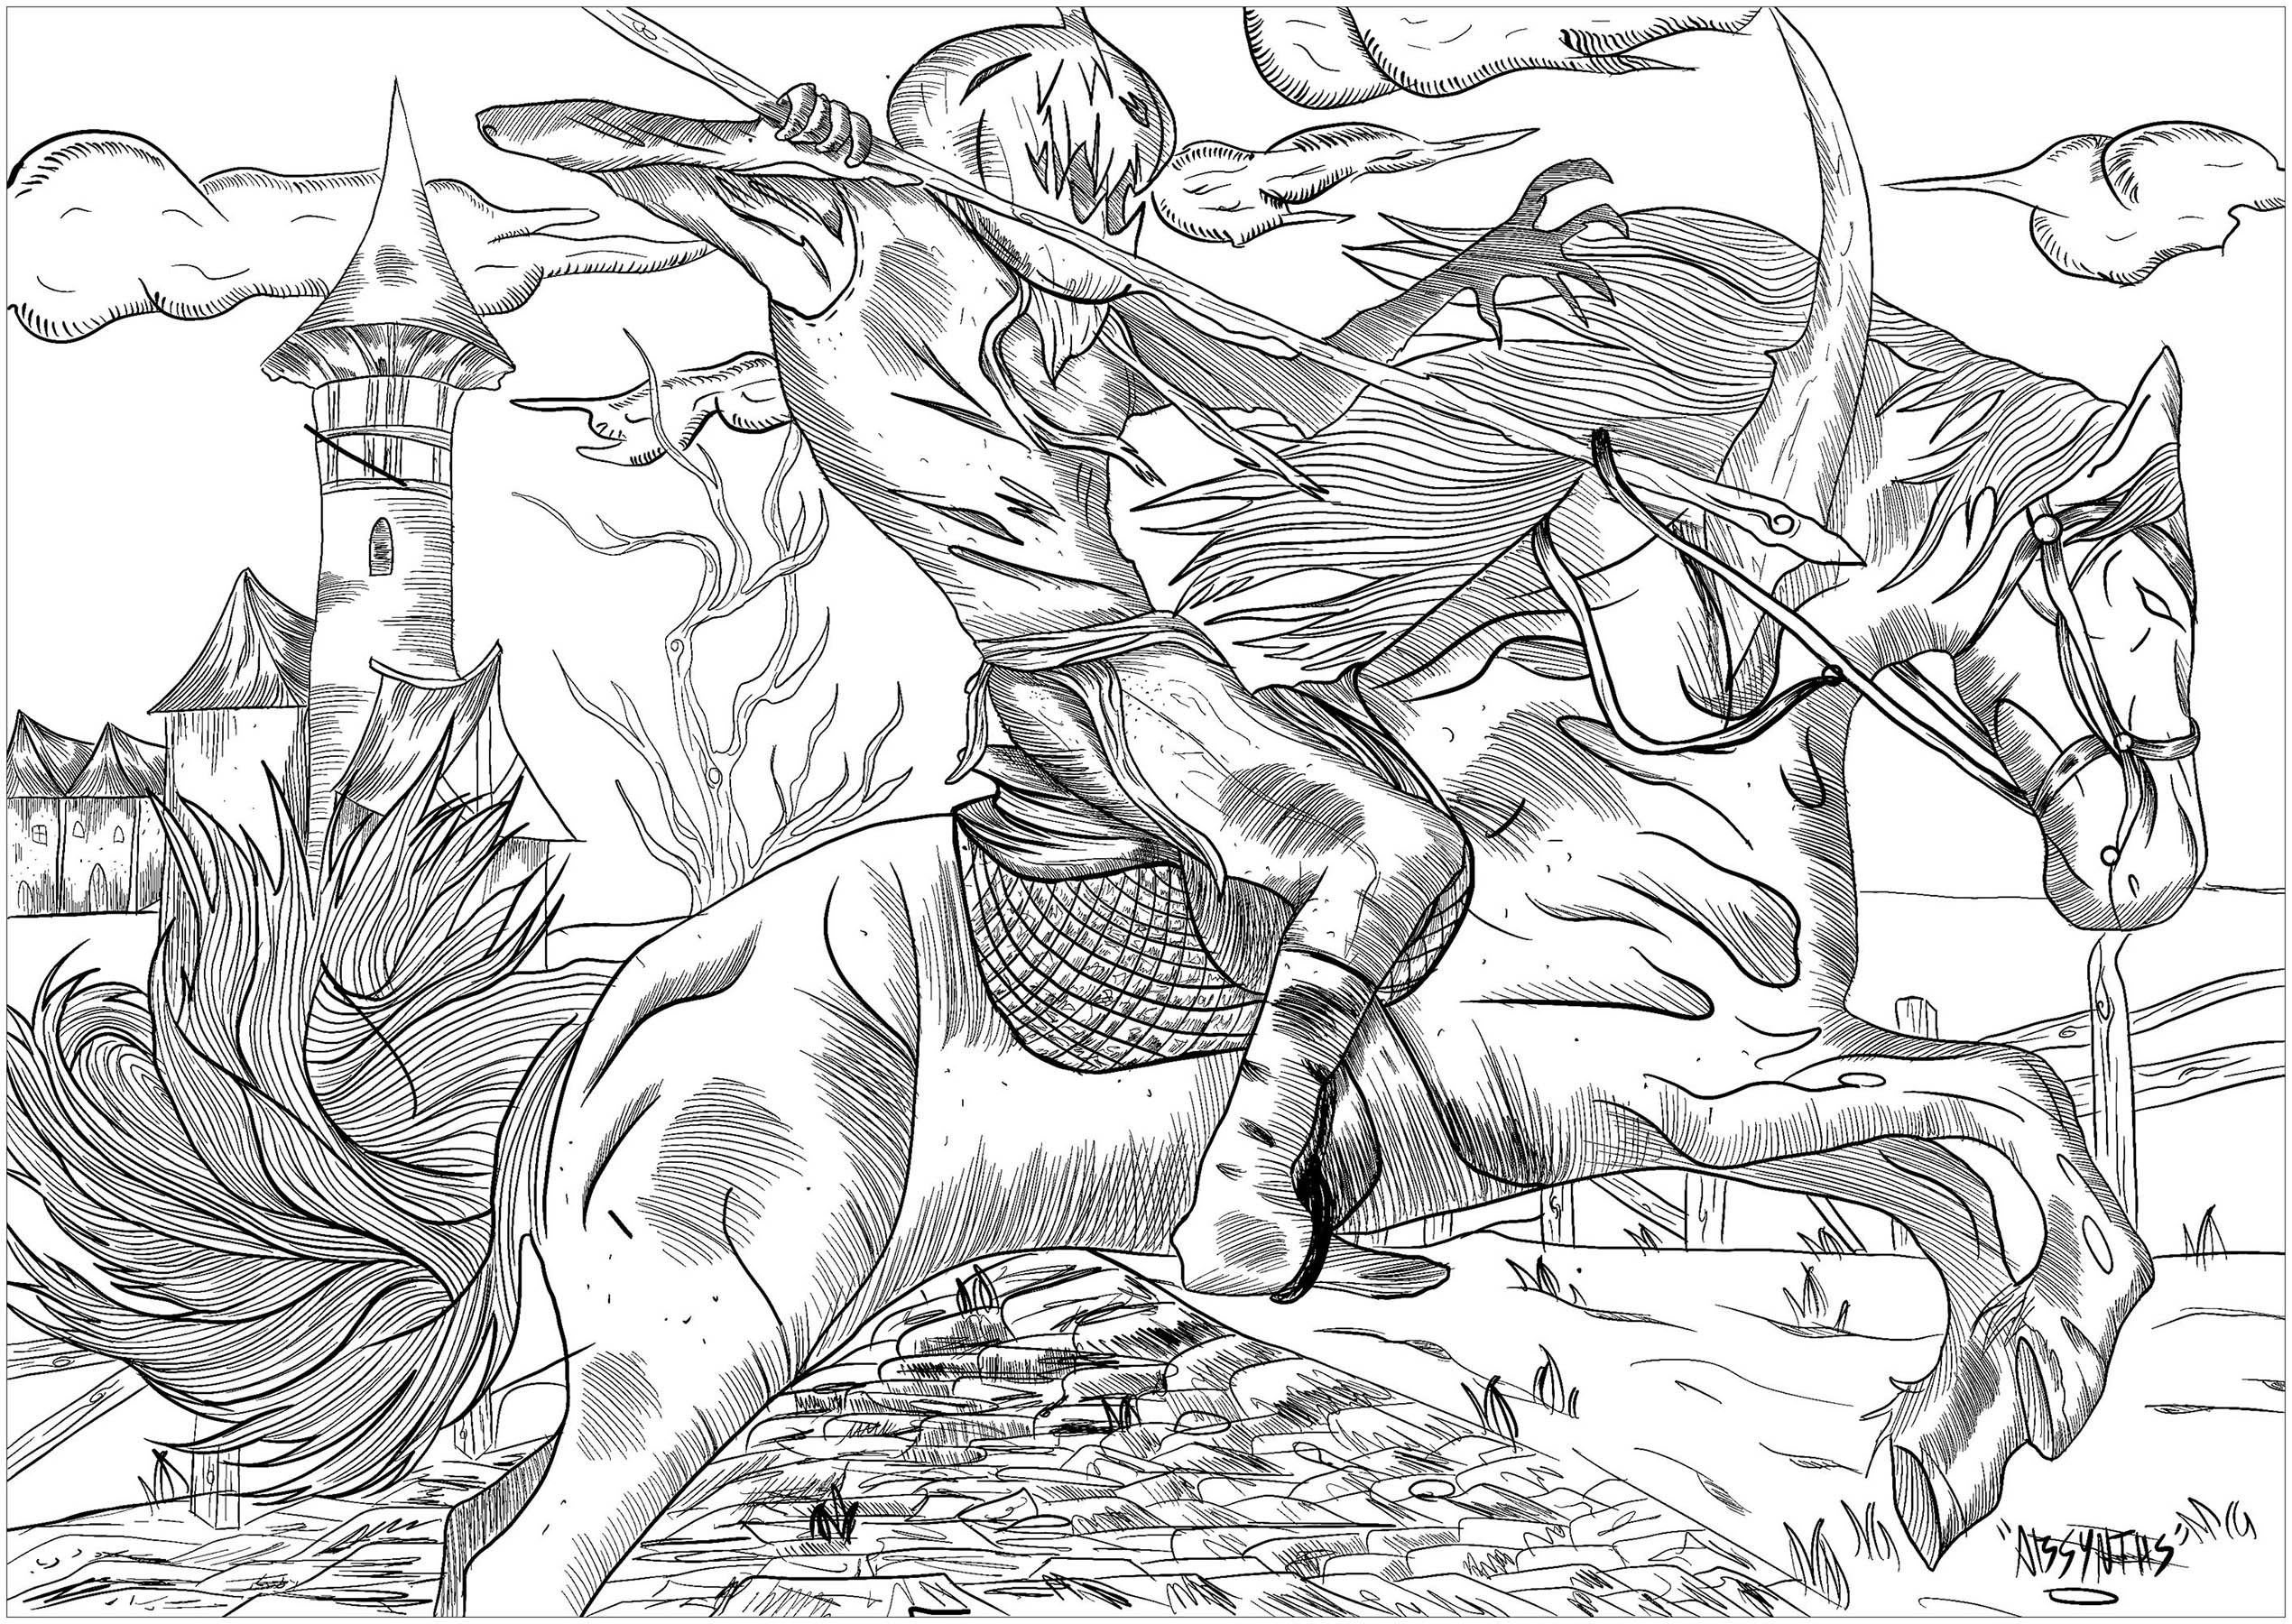 Ein böser Ritter mit einem Kürbiskopf, der auf seinem Geisterpferd reitet ... Ein wahrer Albtraum zum Ausmalen!, Künstler : Absynths